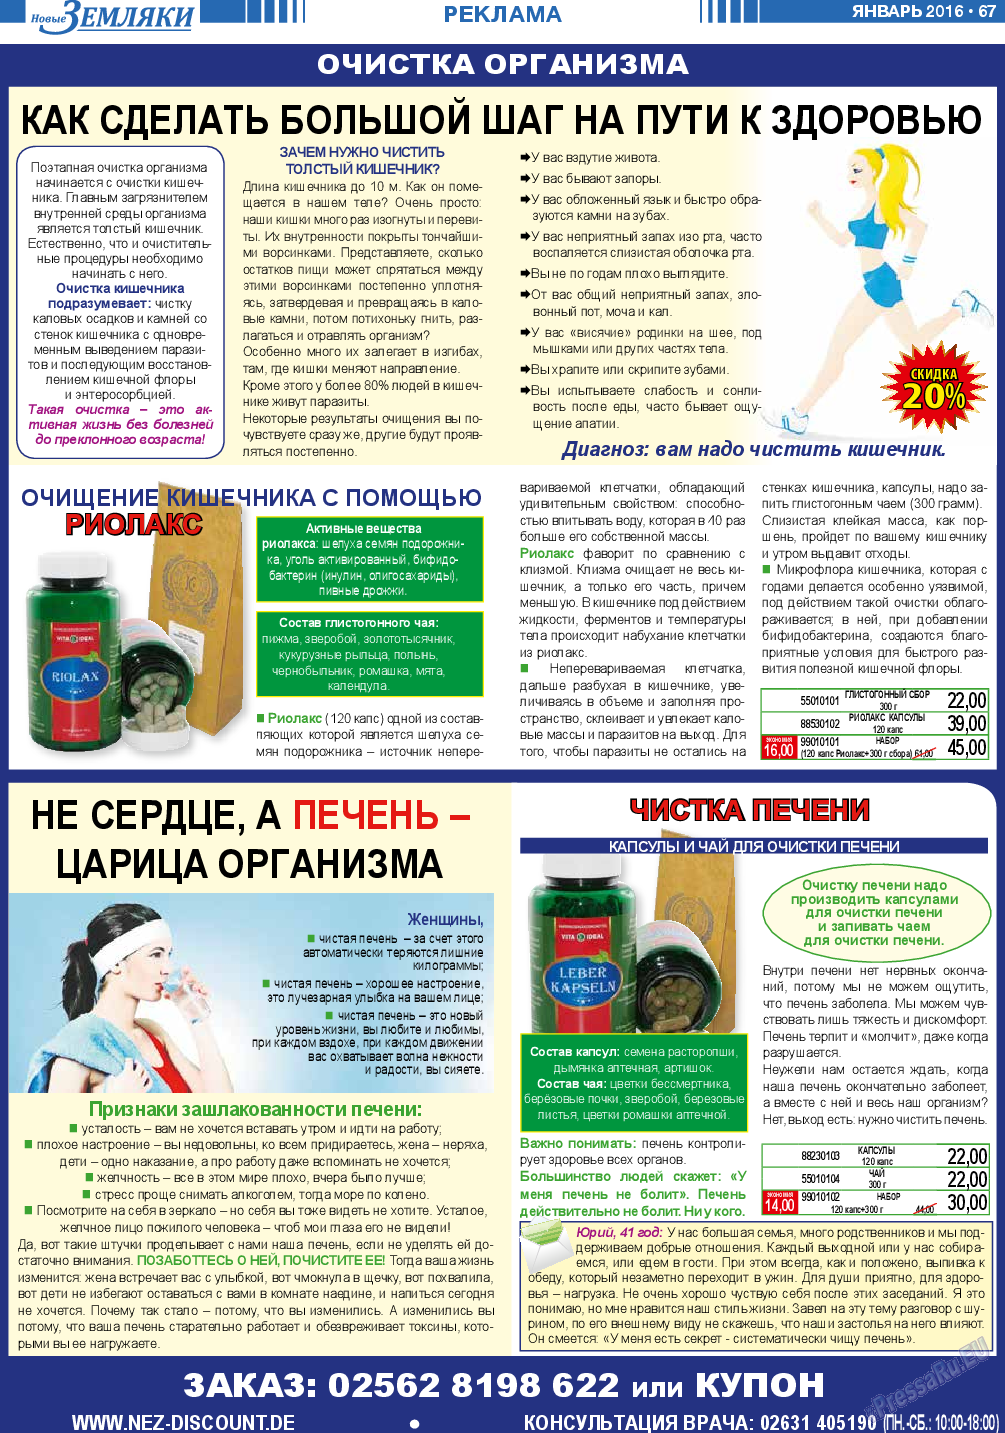 Новые Земляки, газета. 2016 №1 стр.67